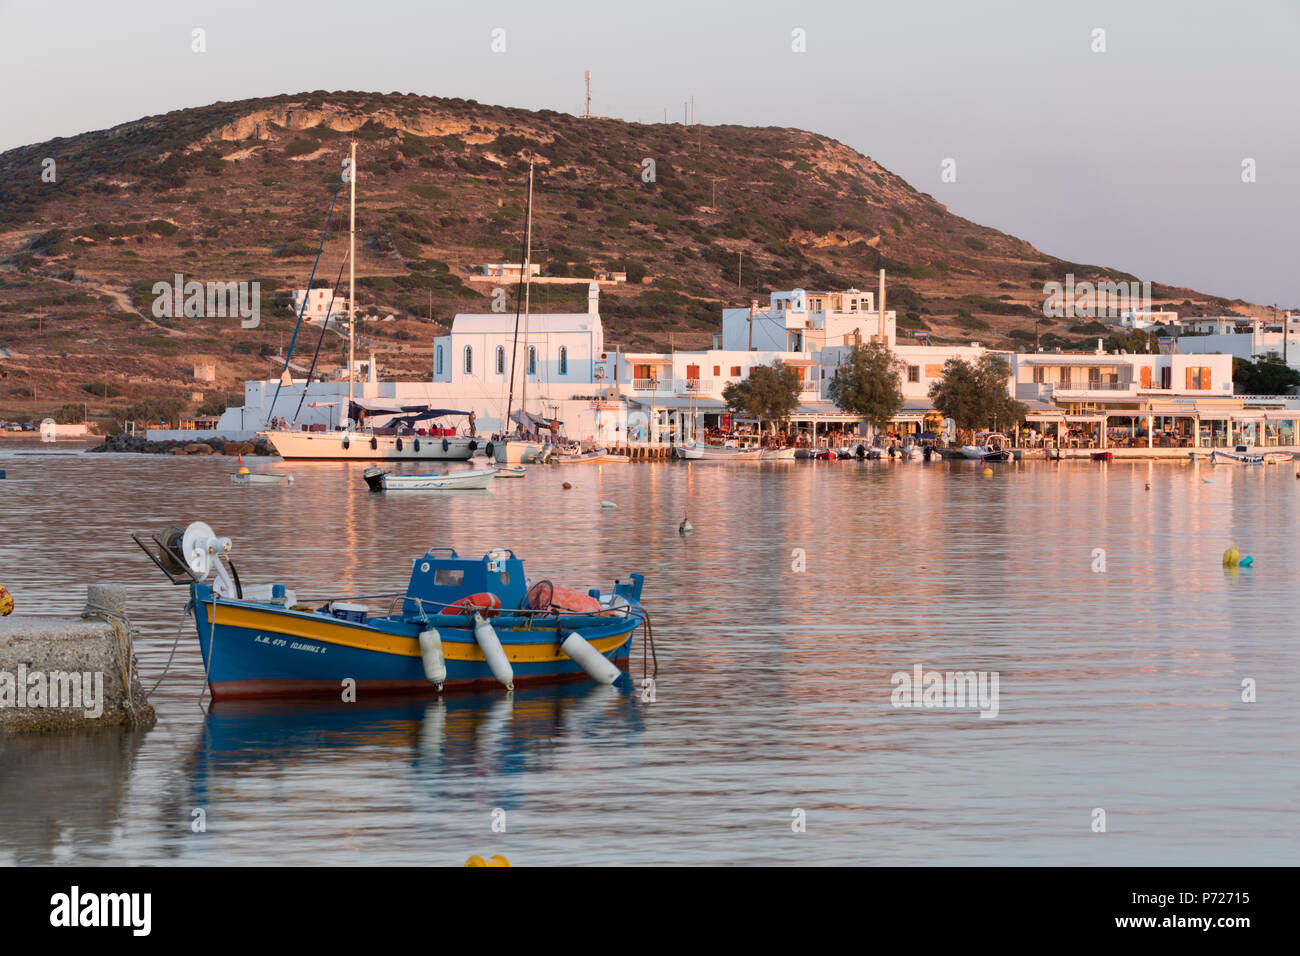 Bateau de pêche en ville, derrière le port de Pollonia, Milos, Cyclades, Mer Égée, îles grecques, Grèce, Europe Banque D'Images